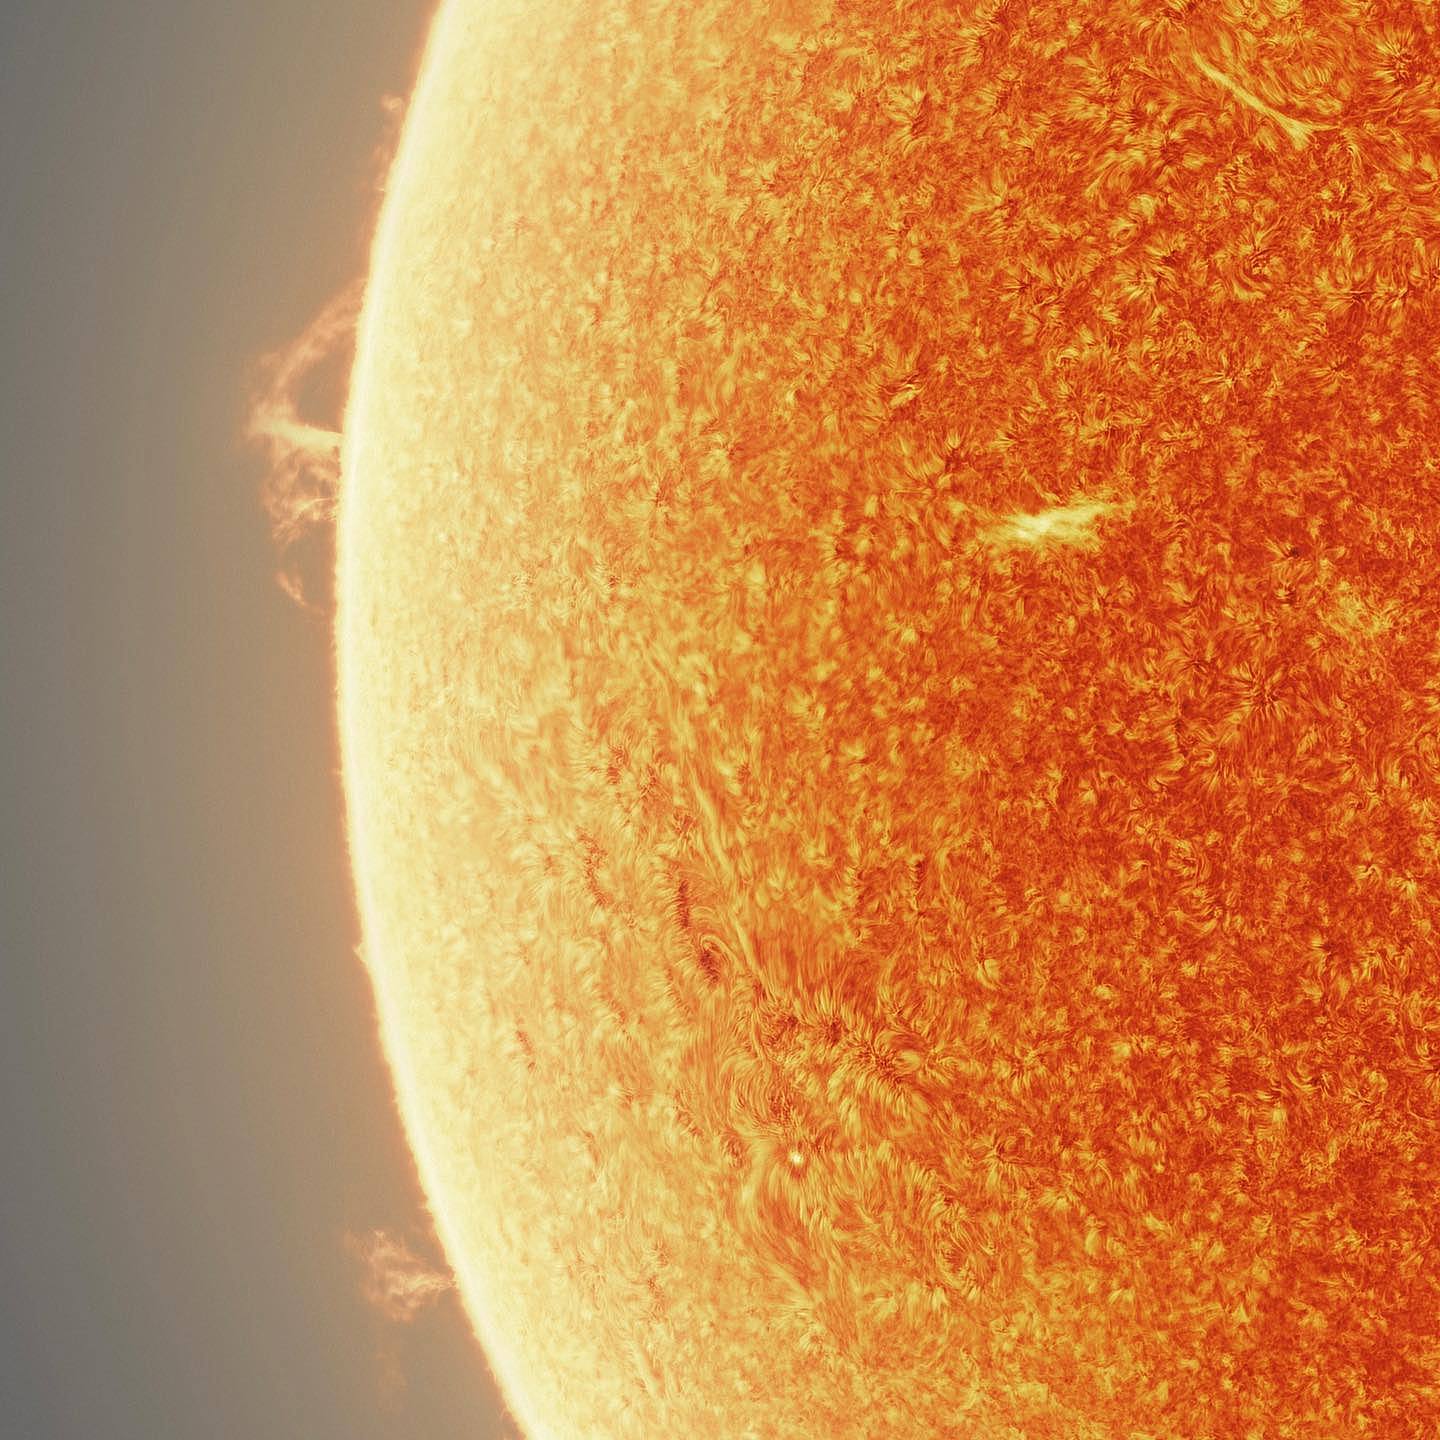 天文摄影家用15万张图制作出一张壮观的太阳照 - 2